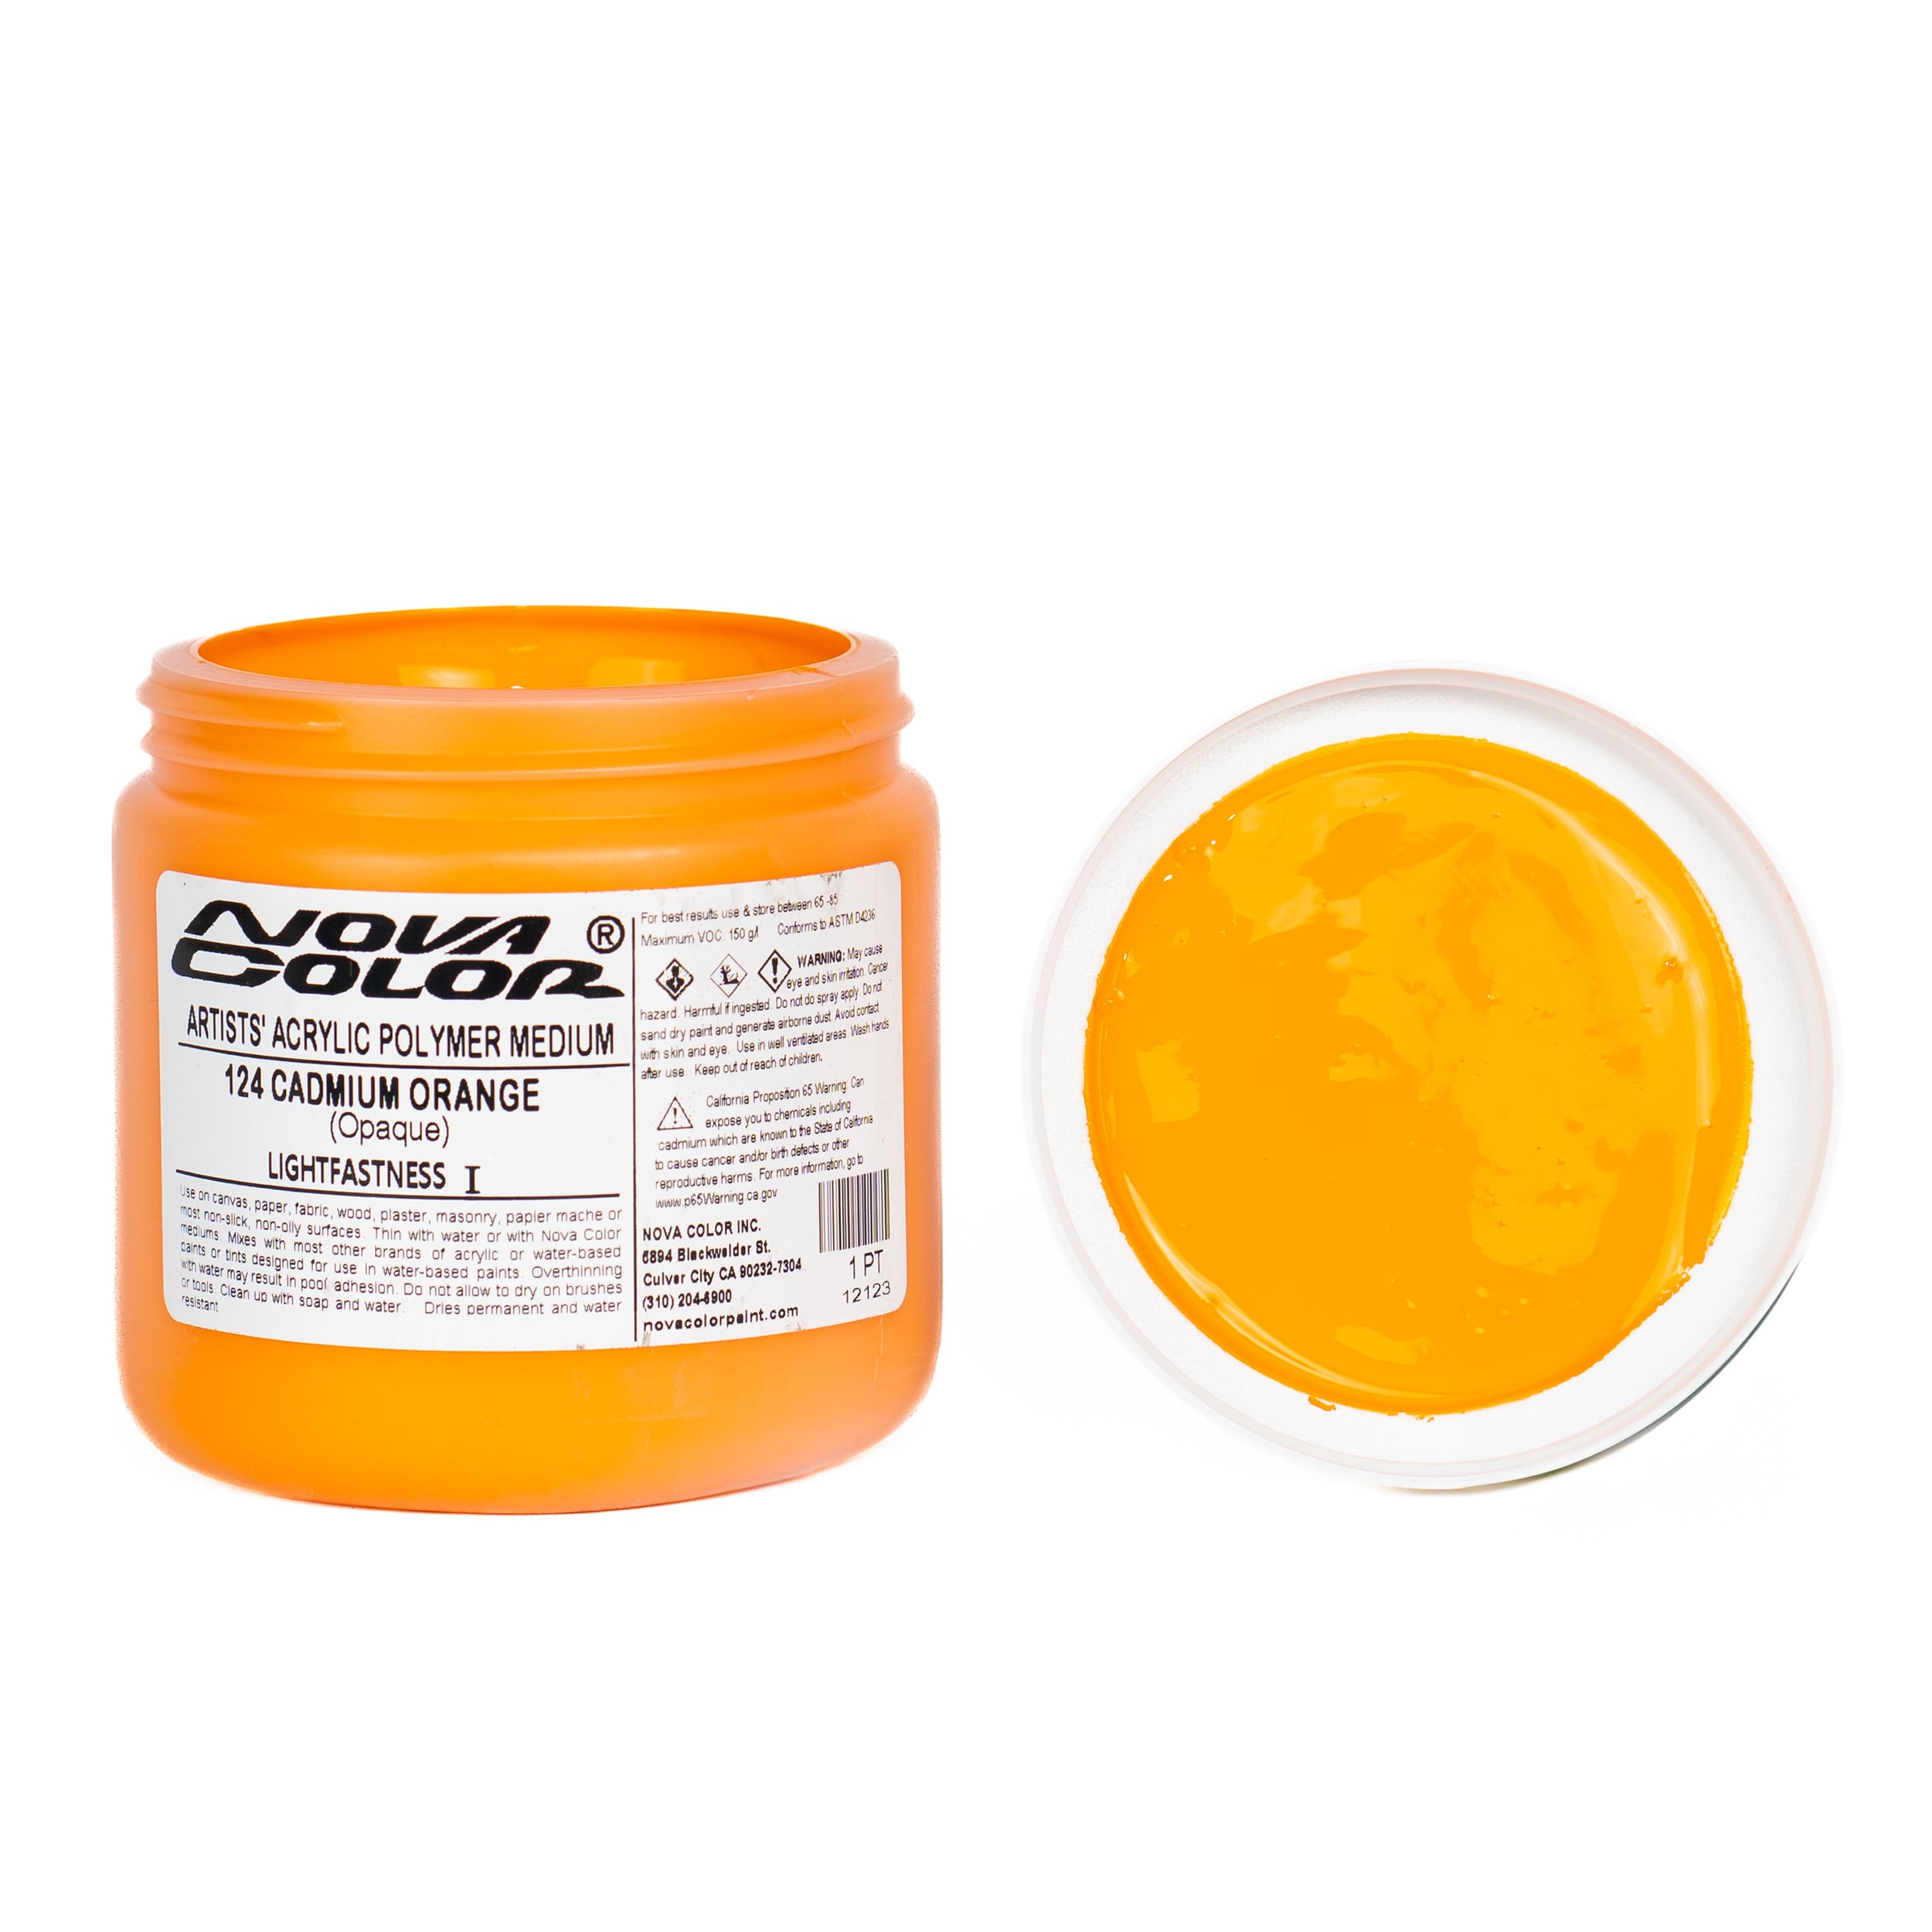 Buy #124 Cadmium Orange - Lightfastness:, ** - Opaque Online